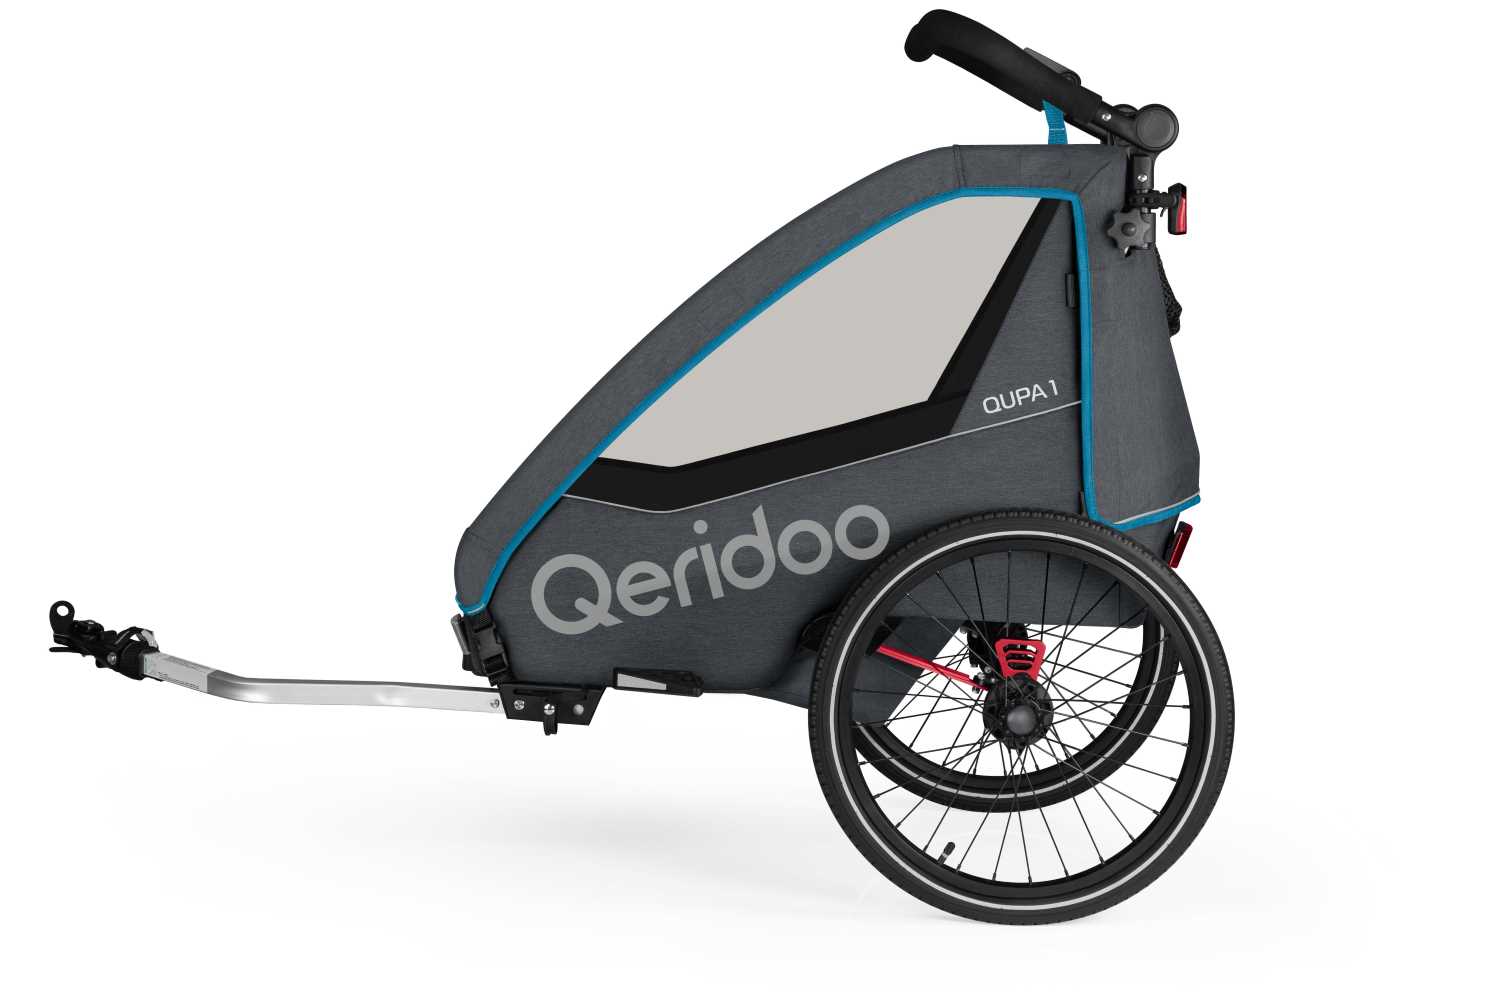 Produktbild von Qeridoo Qupa 1 (2023), blau (Q-QUP1-23-BL), Einsitzer Kinderfahrradanhänger mit Blattfeder Dämpfsystem